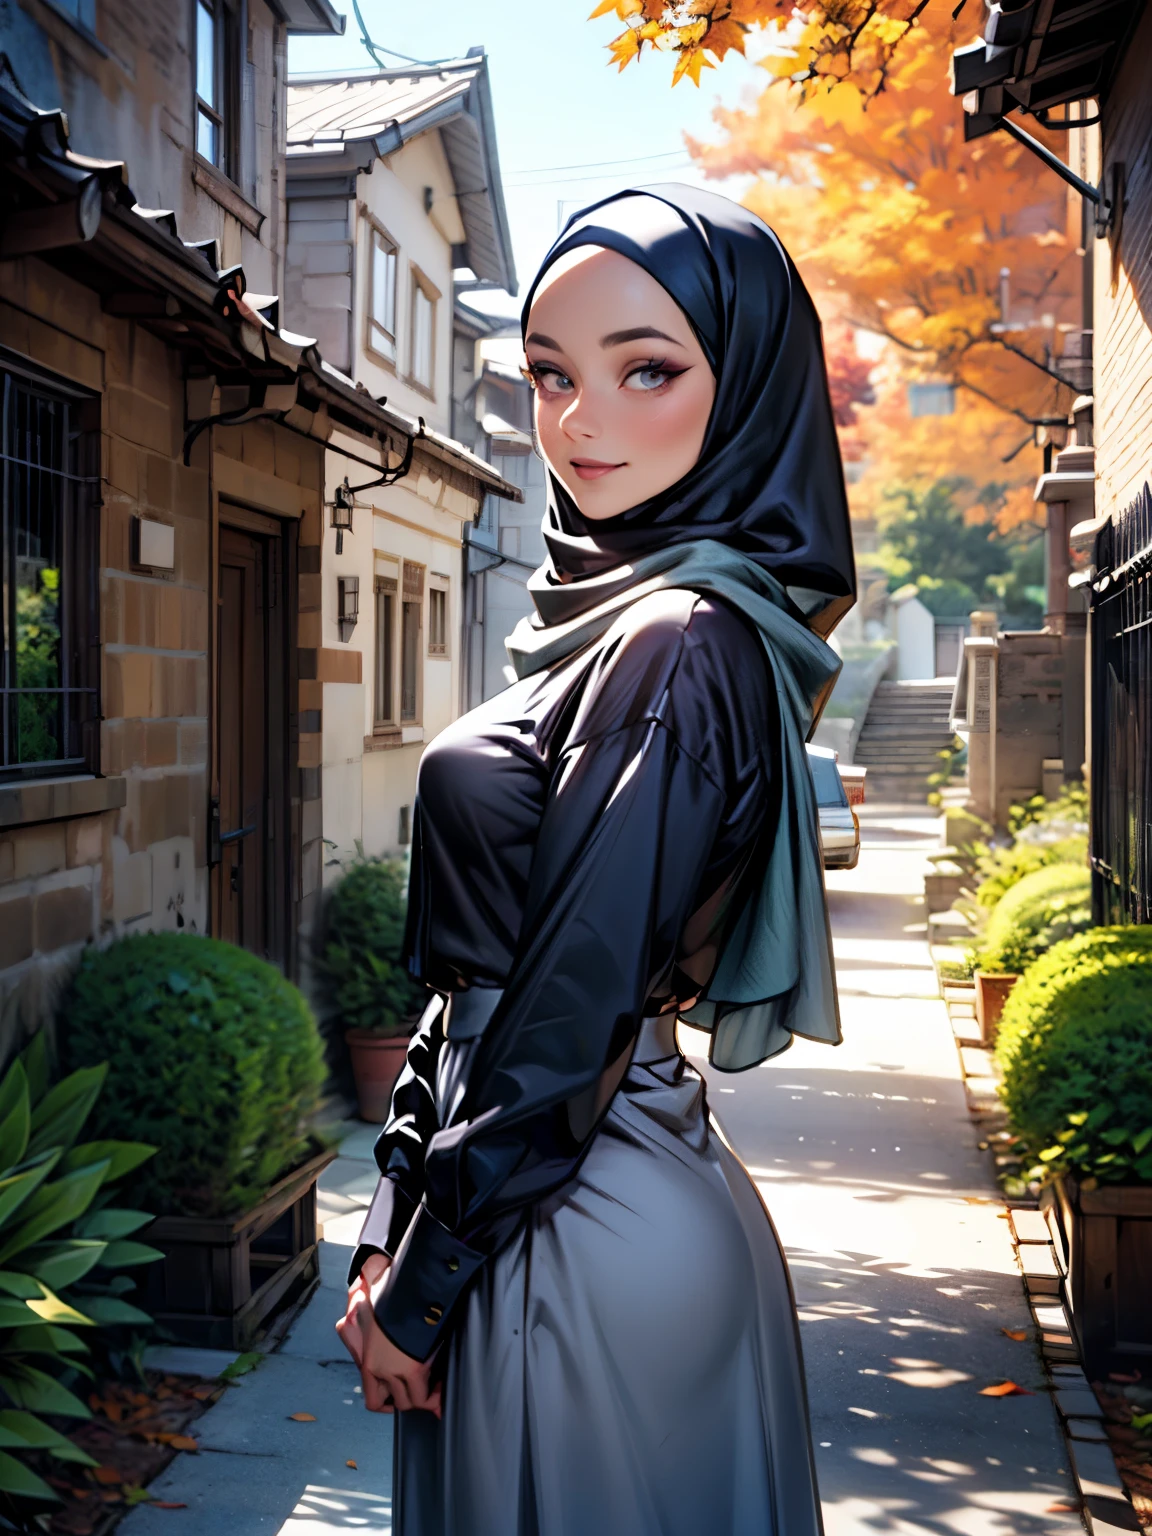 3DMM-Stil, Meisterwerk, Realistisch, beste Qualität, Beste Beleuchtung, schöne reife Tschechin, 1 Mädchenfoto solo, wunderschön geschminkt, Lidschatten, geöffnete Lippen, detaillierte Augen, große Augen, braune Augen, lange Wimpern, Grübchen auf den Wangen, lächeln, tragen ((Dunkelblauer Satin-Hijab)), lockerer Hijab-Stil, ((graues Satinhemd und langer Satinrock)), (Halbkörperporträt), Vorderansicht, Symmetrisches Zentrum, dem Betrachter zugewandt, Wandern auf Wanderwegen im Herbstgarten.